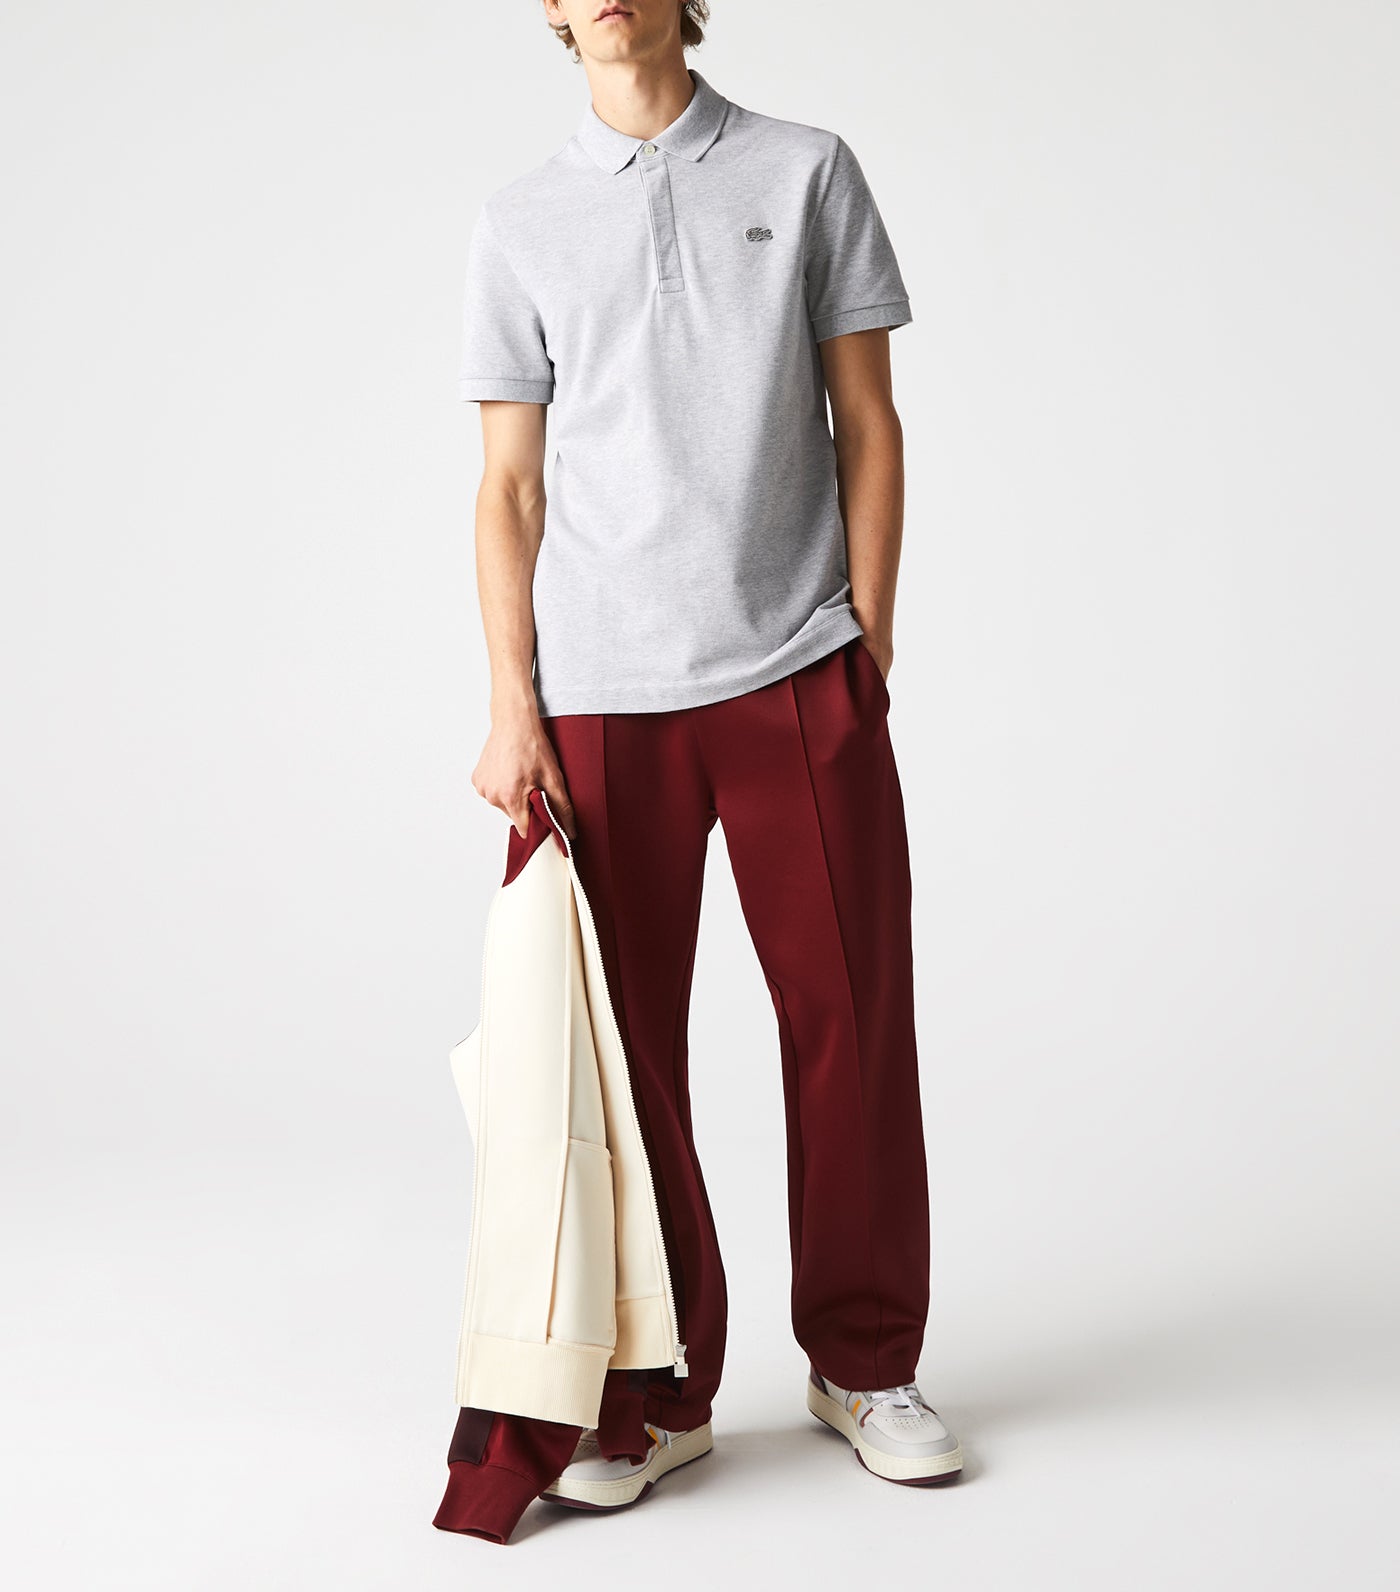 Men's Lacoste Paris Polo Shirt Regular Fit Stretch Cotton Piqué Silver Chine